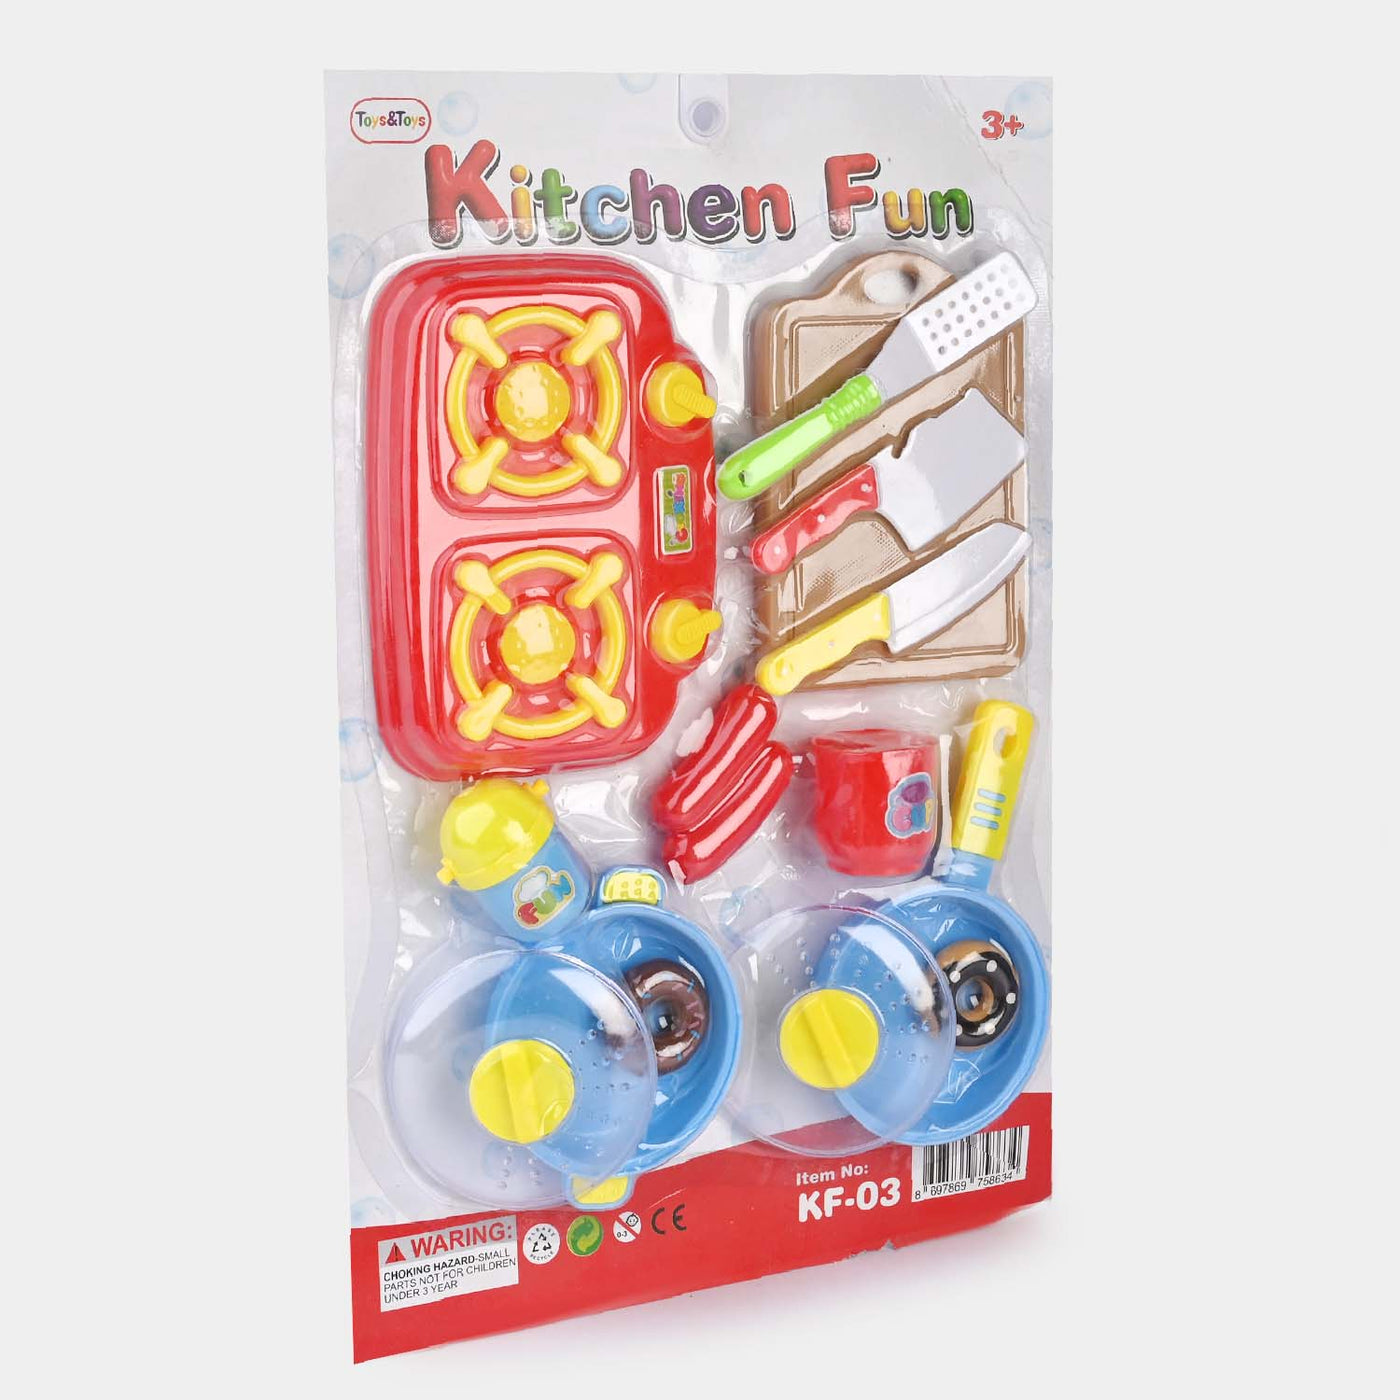 Kitchen Fun Play Set Toy